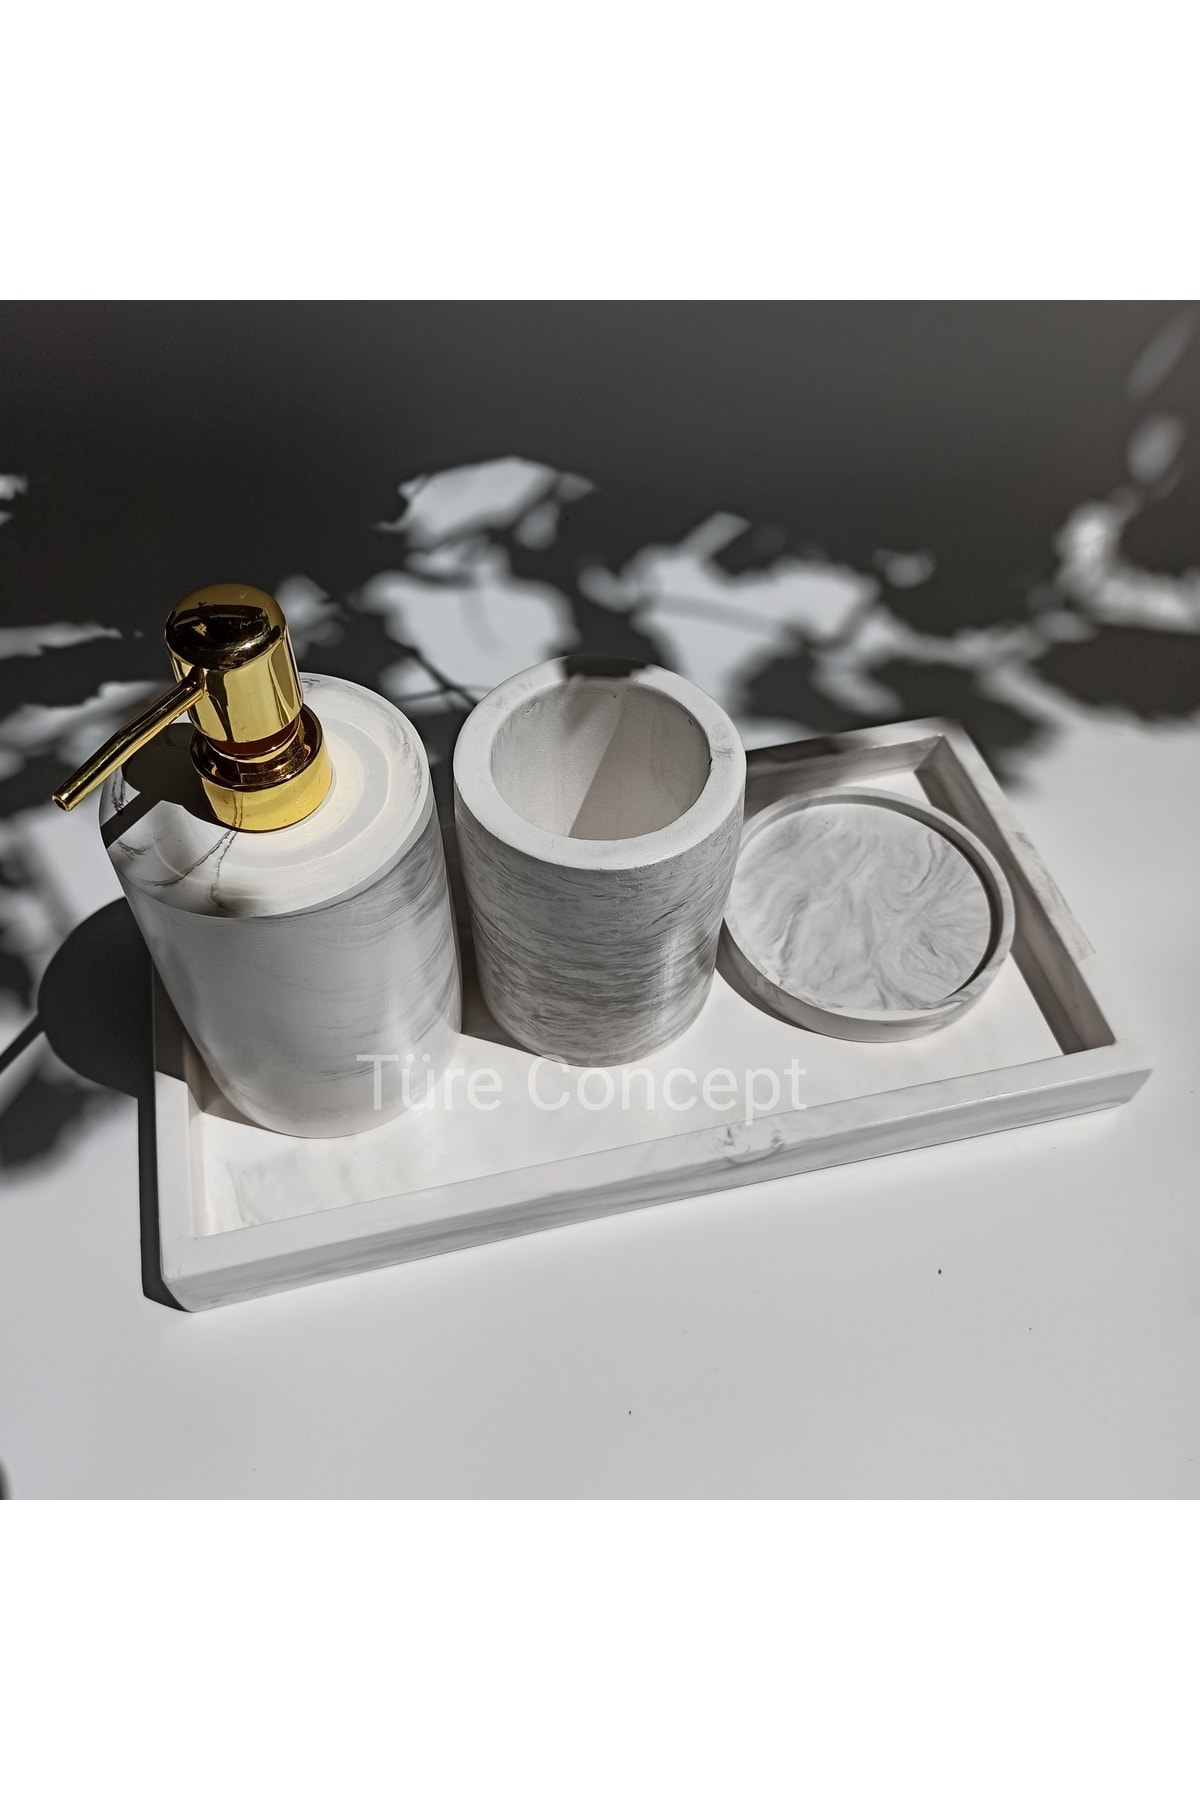 Ture Concept Mermer Görünümlü Banyo Set Dikdörtgen Tepsi & Sıvı Sabunluk & Katı Sabunluk & Diş Fırçalık